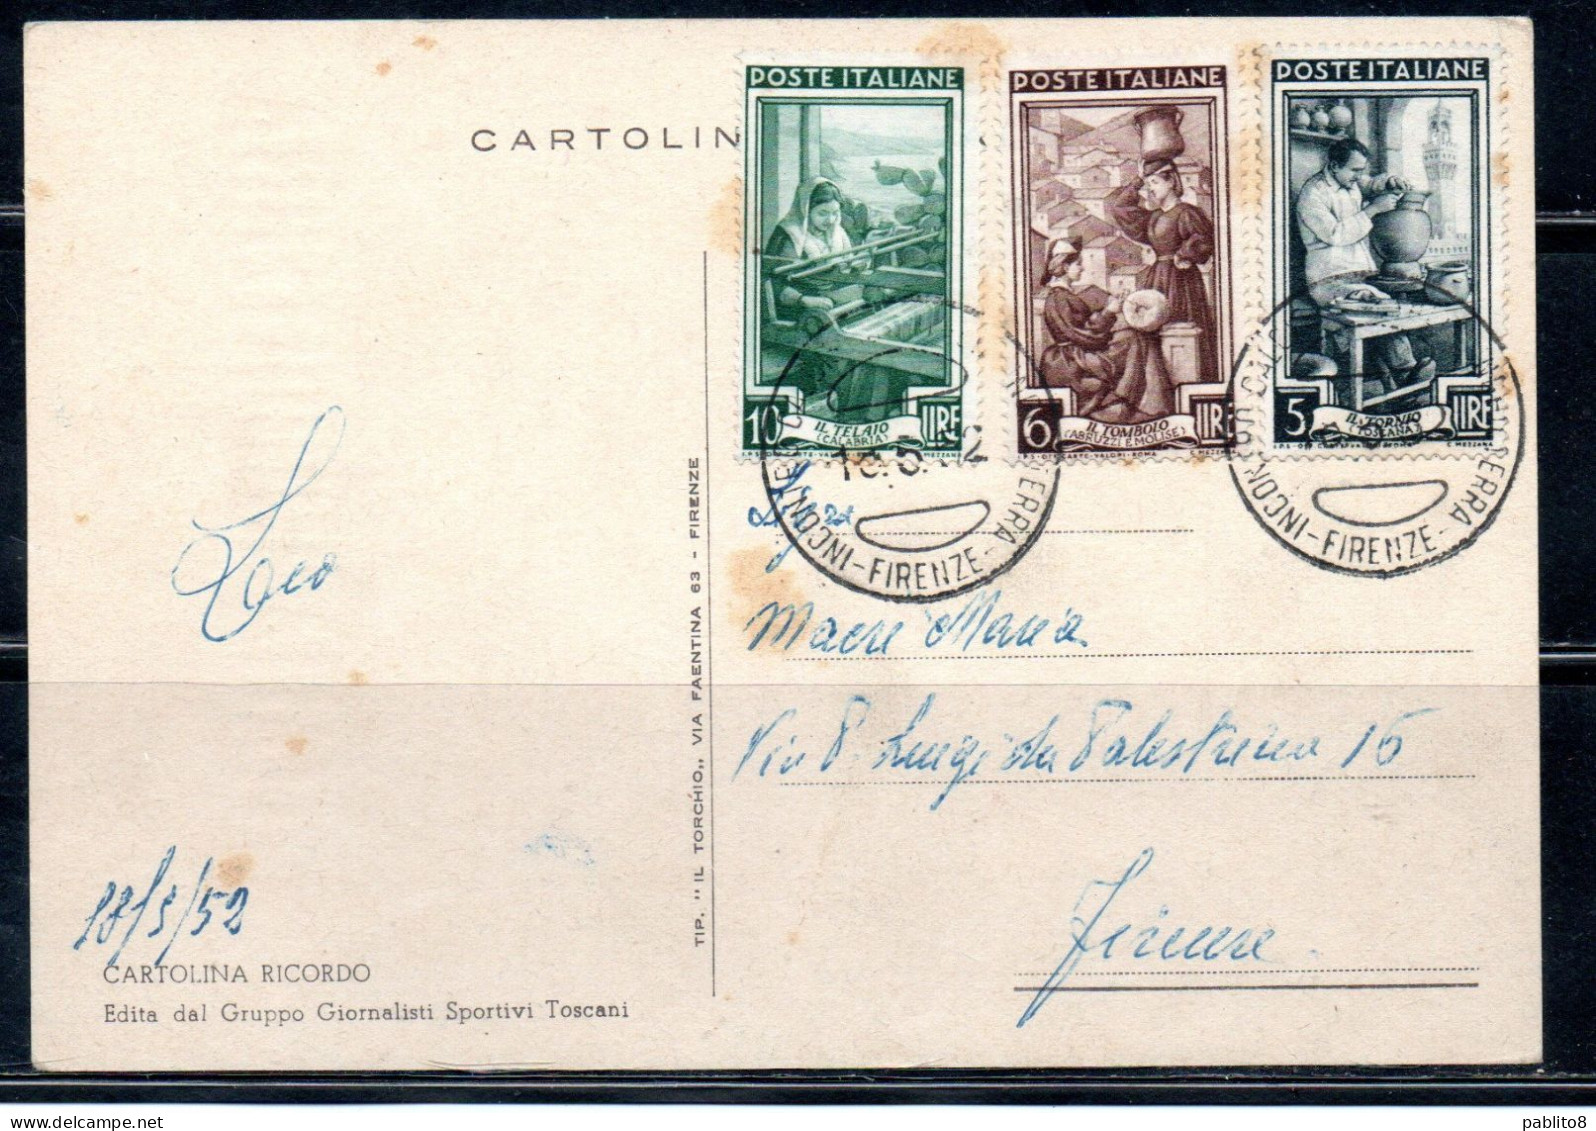 ITALIA REPUBBLICA ITALY REPUBLIC 18 05 1952 IN RICORDO DI ITALIA-INGHILTERRA CALCIO MAXI MAXIMUM CARD CARTOLINA CARTE - Maximum Cards